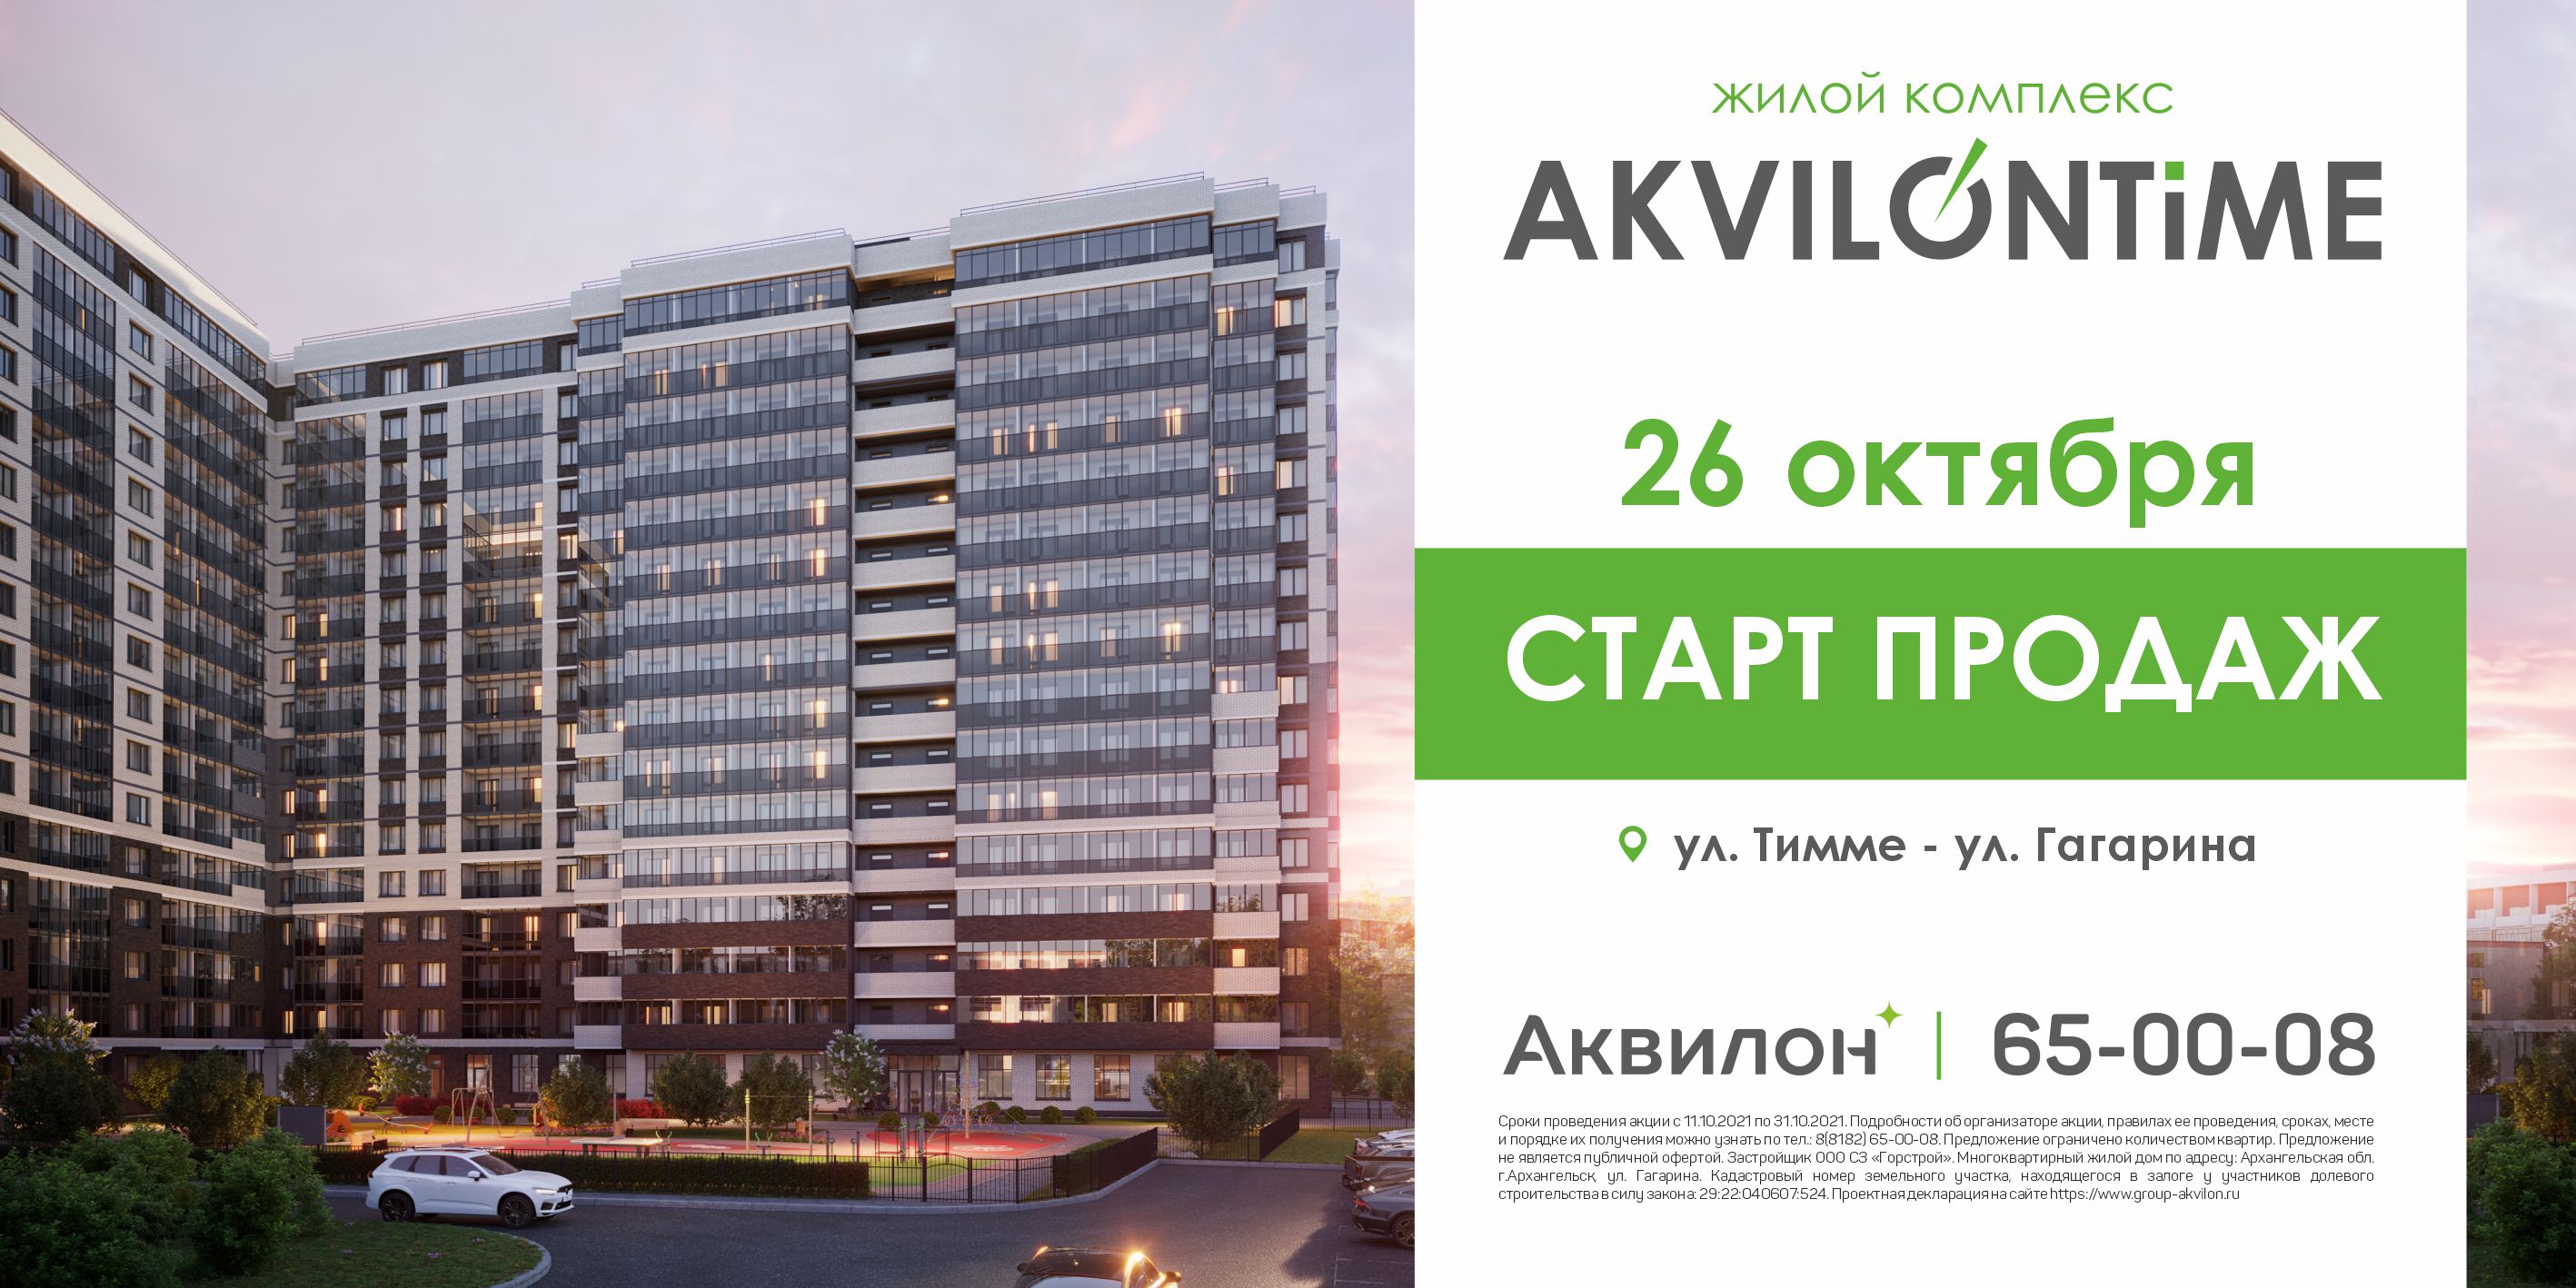 Группа «Аквилон» начинает строительство в Архангельске еще одного жилого комплекса